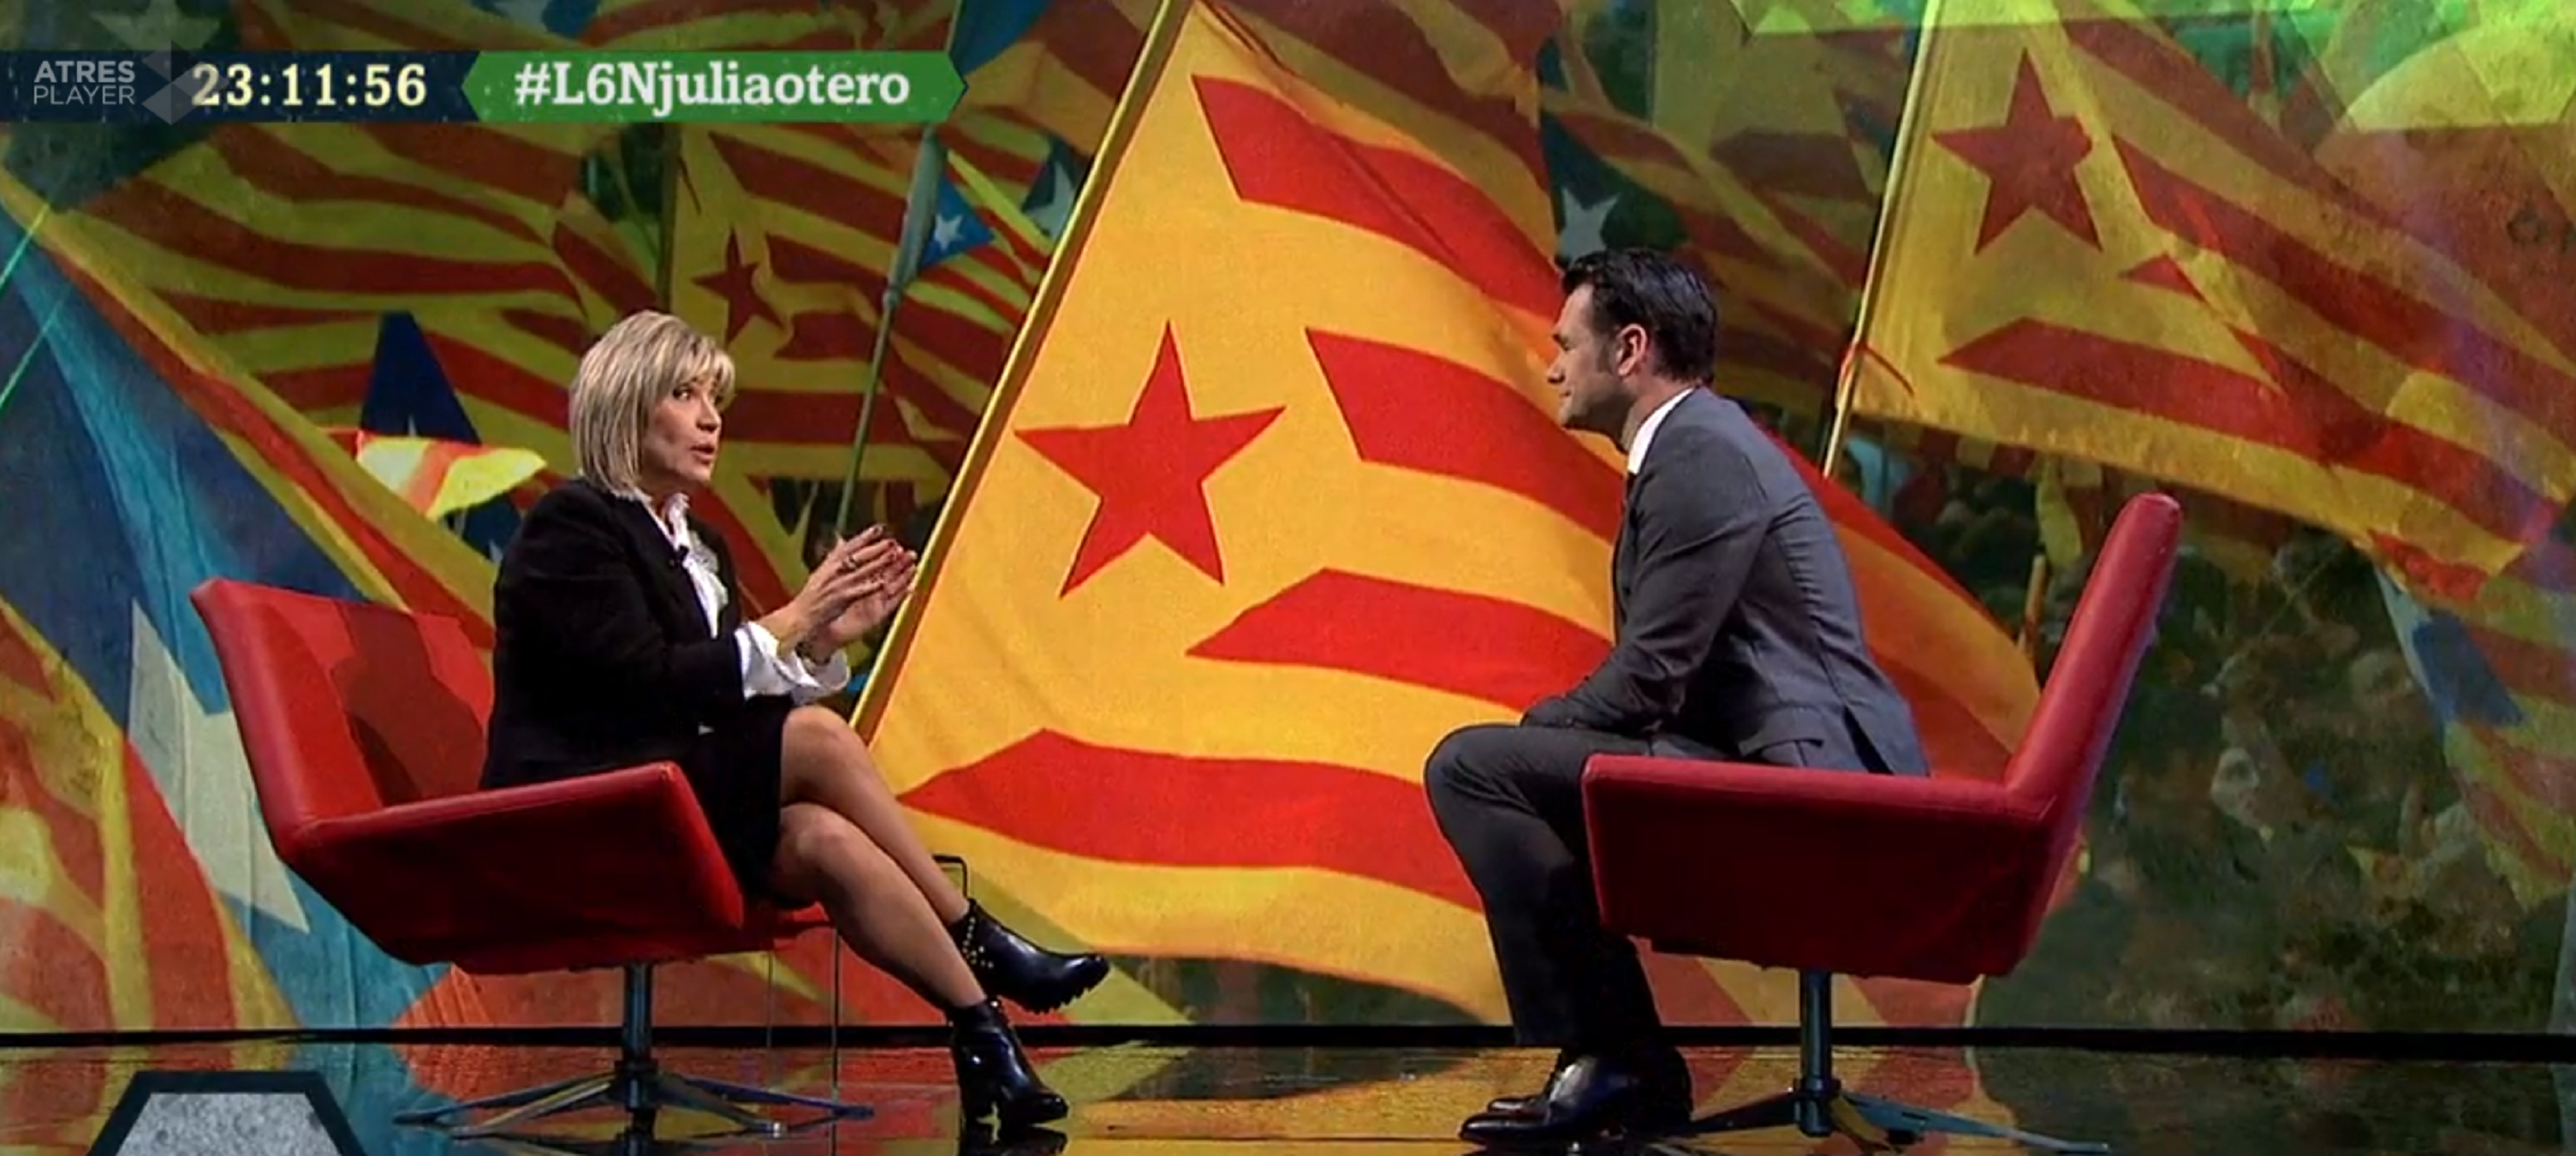 Insultos a Julia Otero que vaticina cuándo Cataluña será indepediente